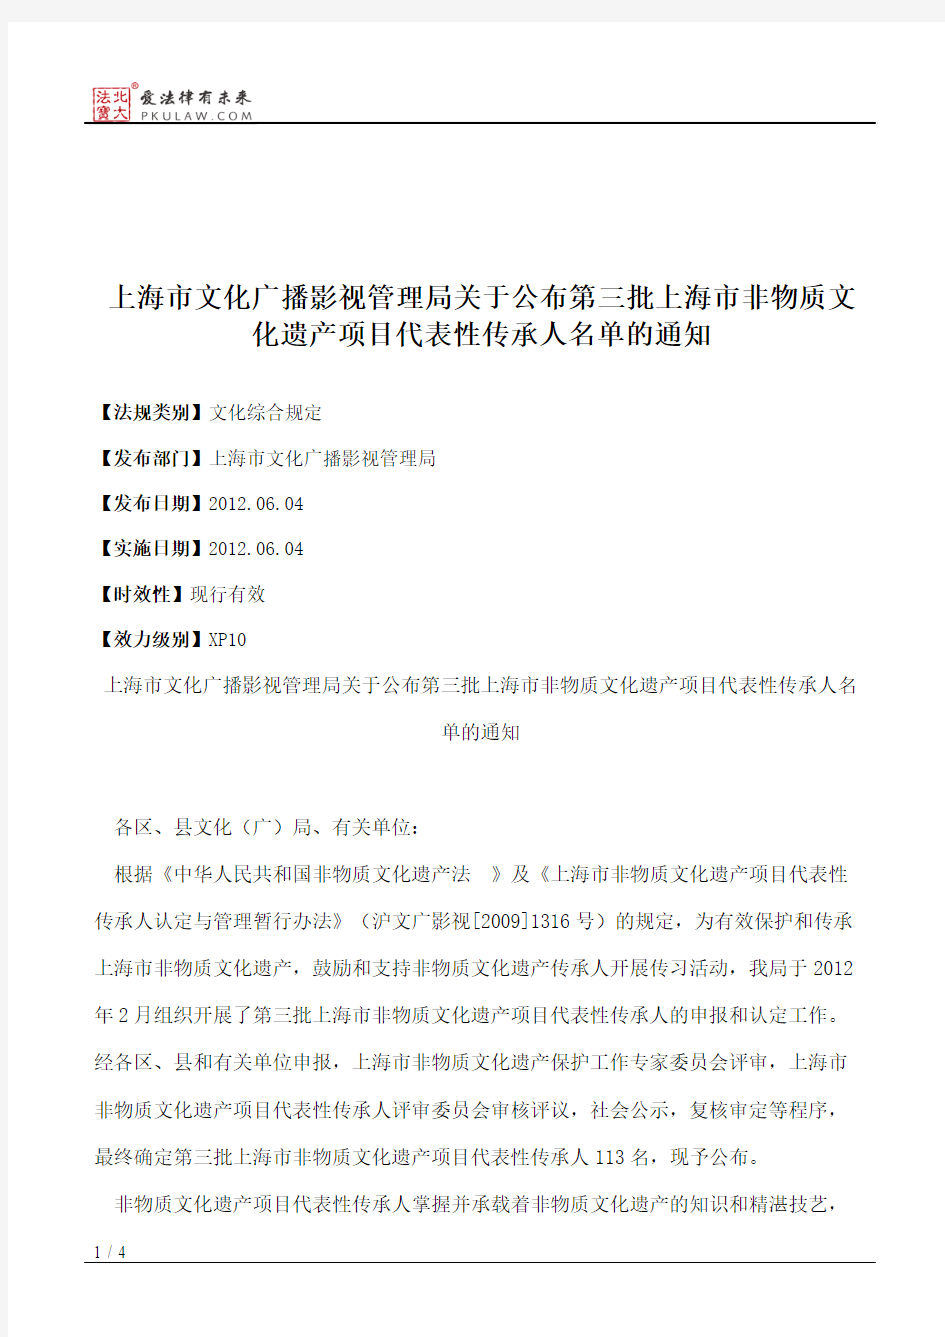 上海市文化广播影视管理局关于公布第三批上海市非物质文化遗产项